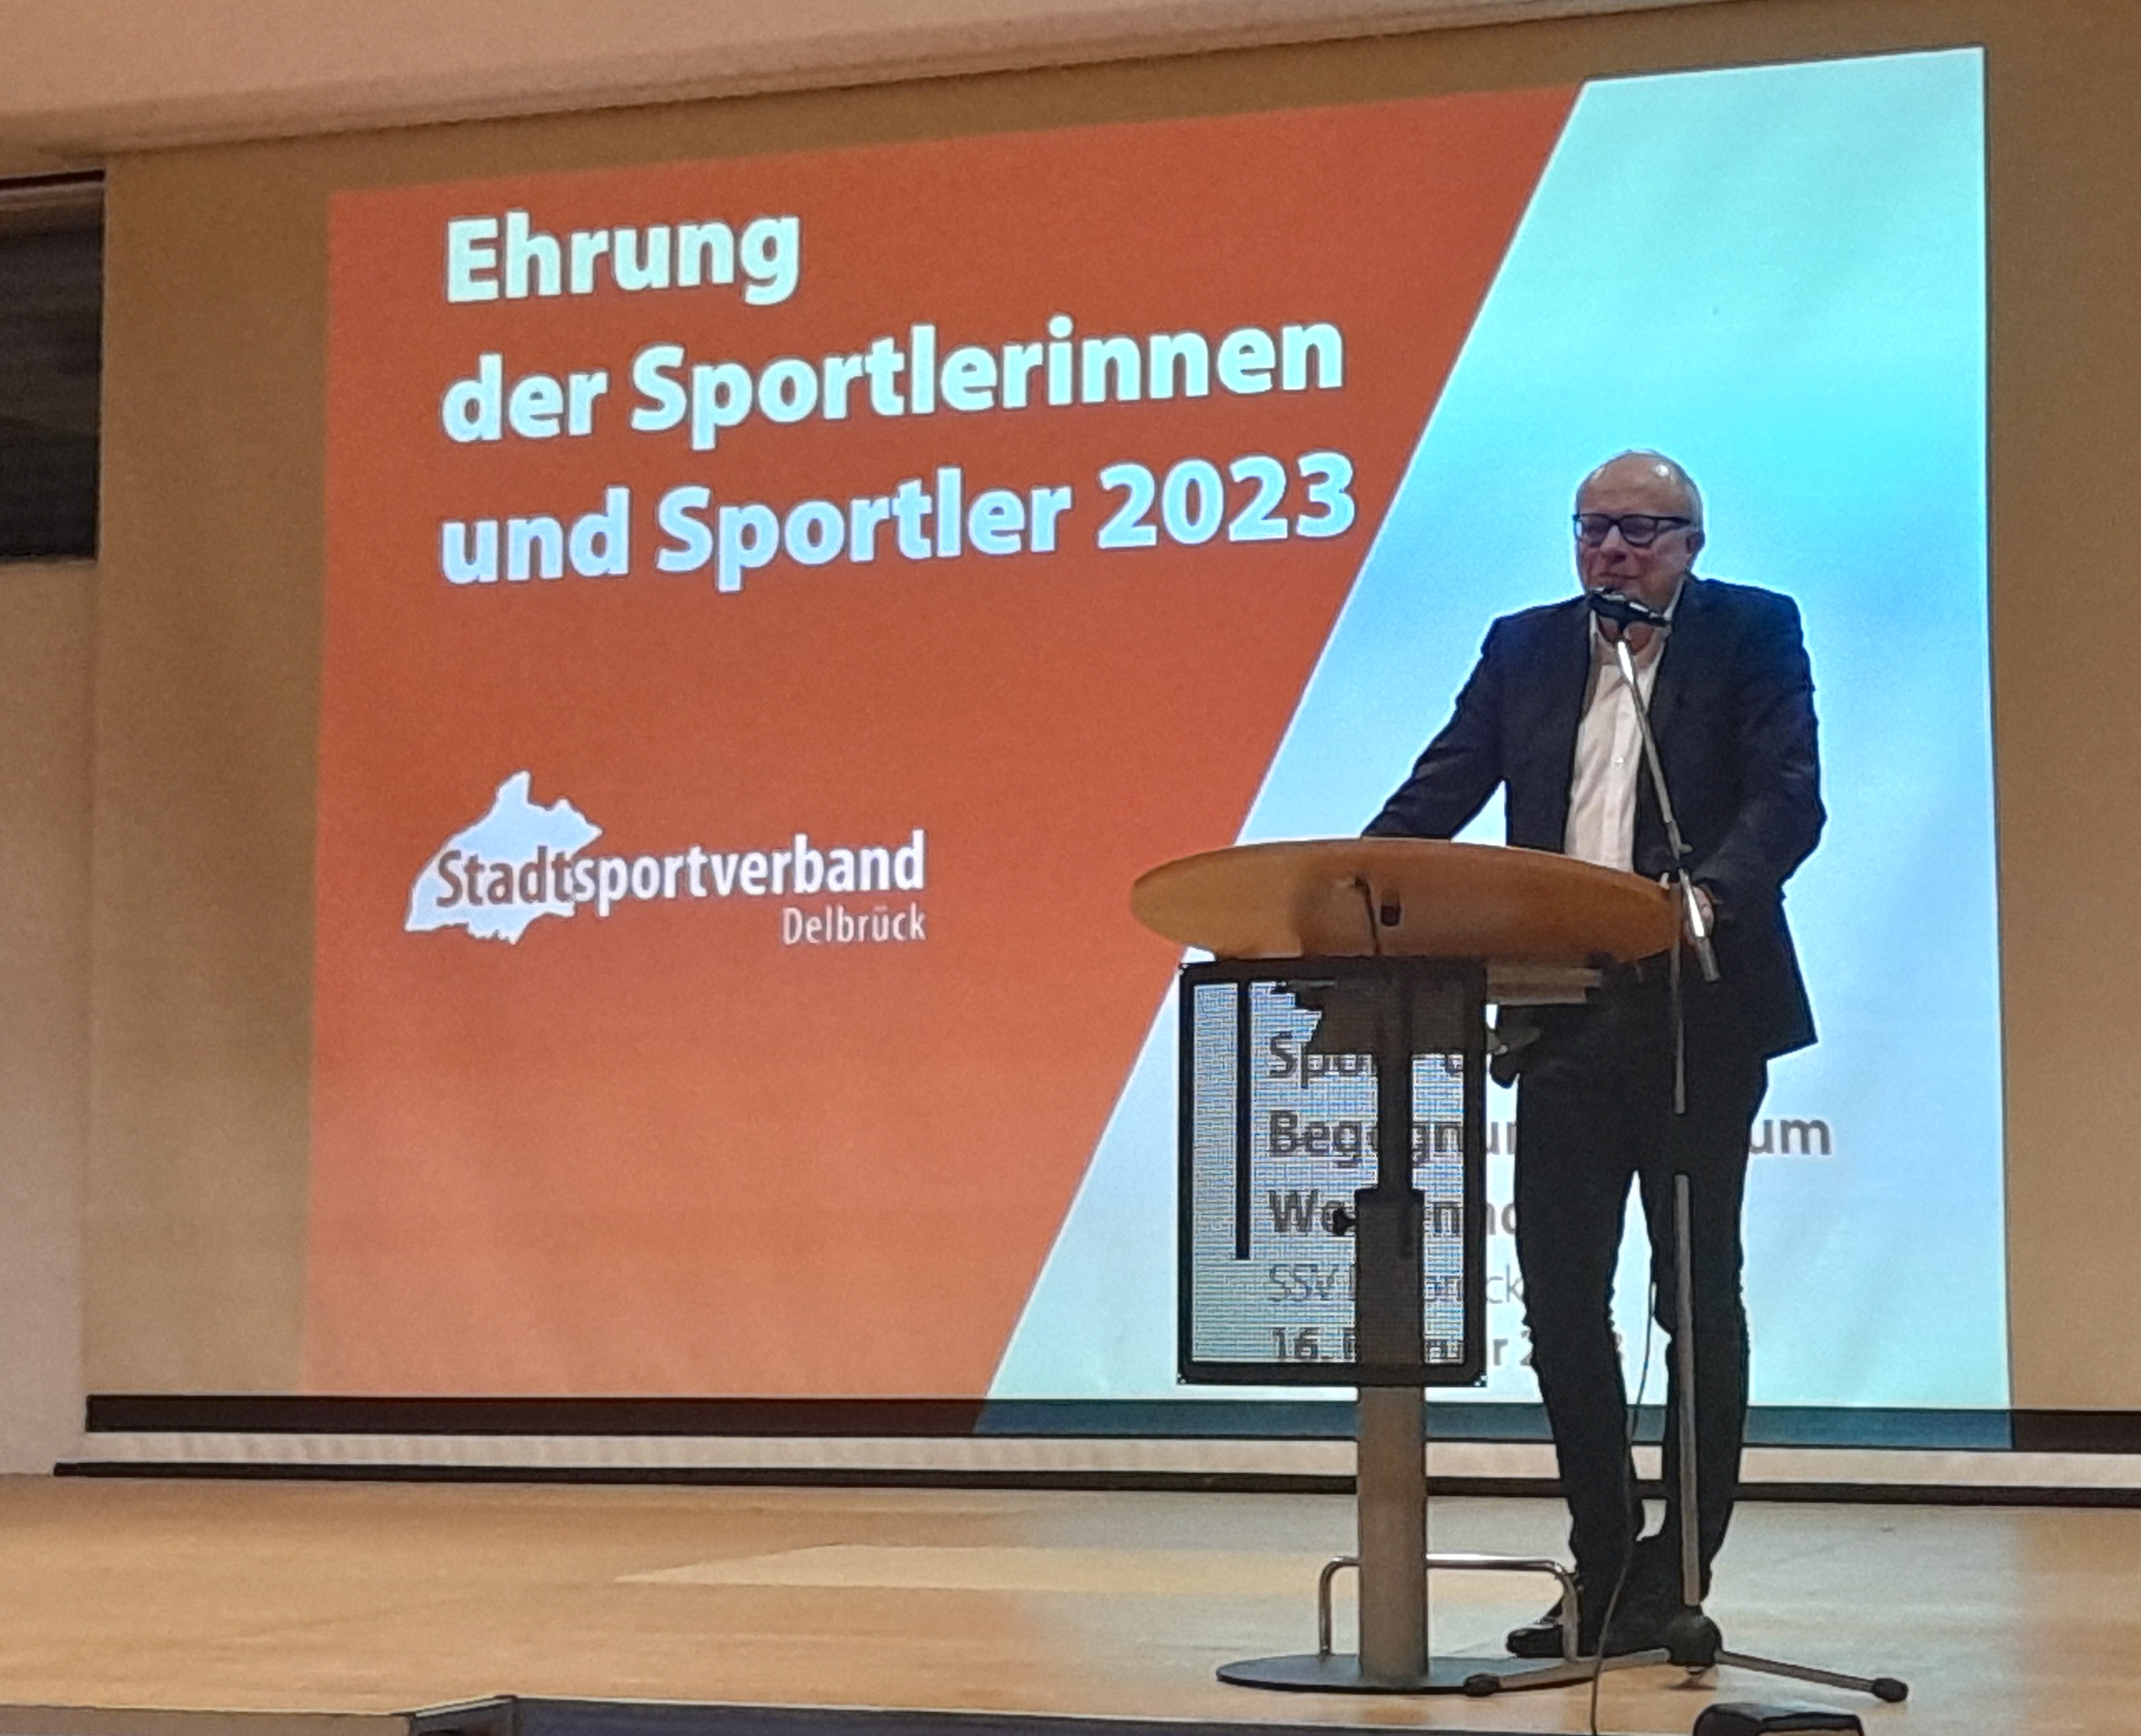 Stadtsportverband Delbrück honoriert Leistungen von Sportlern und Ehrenamtlichen